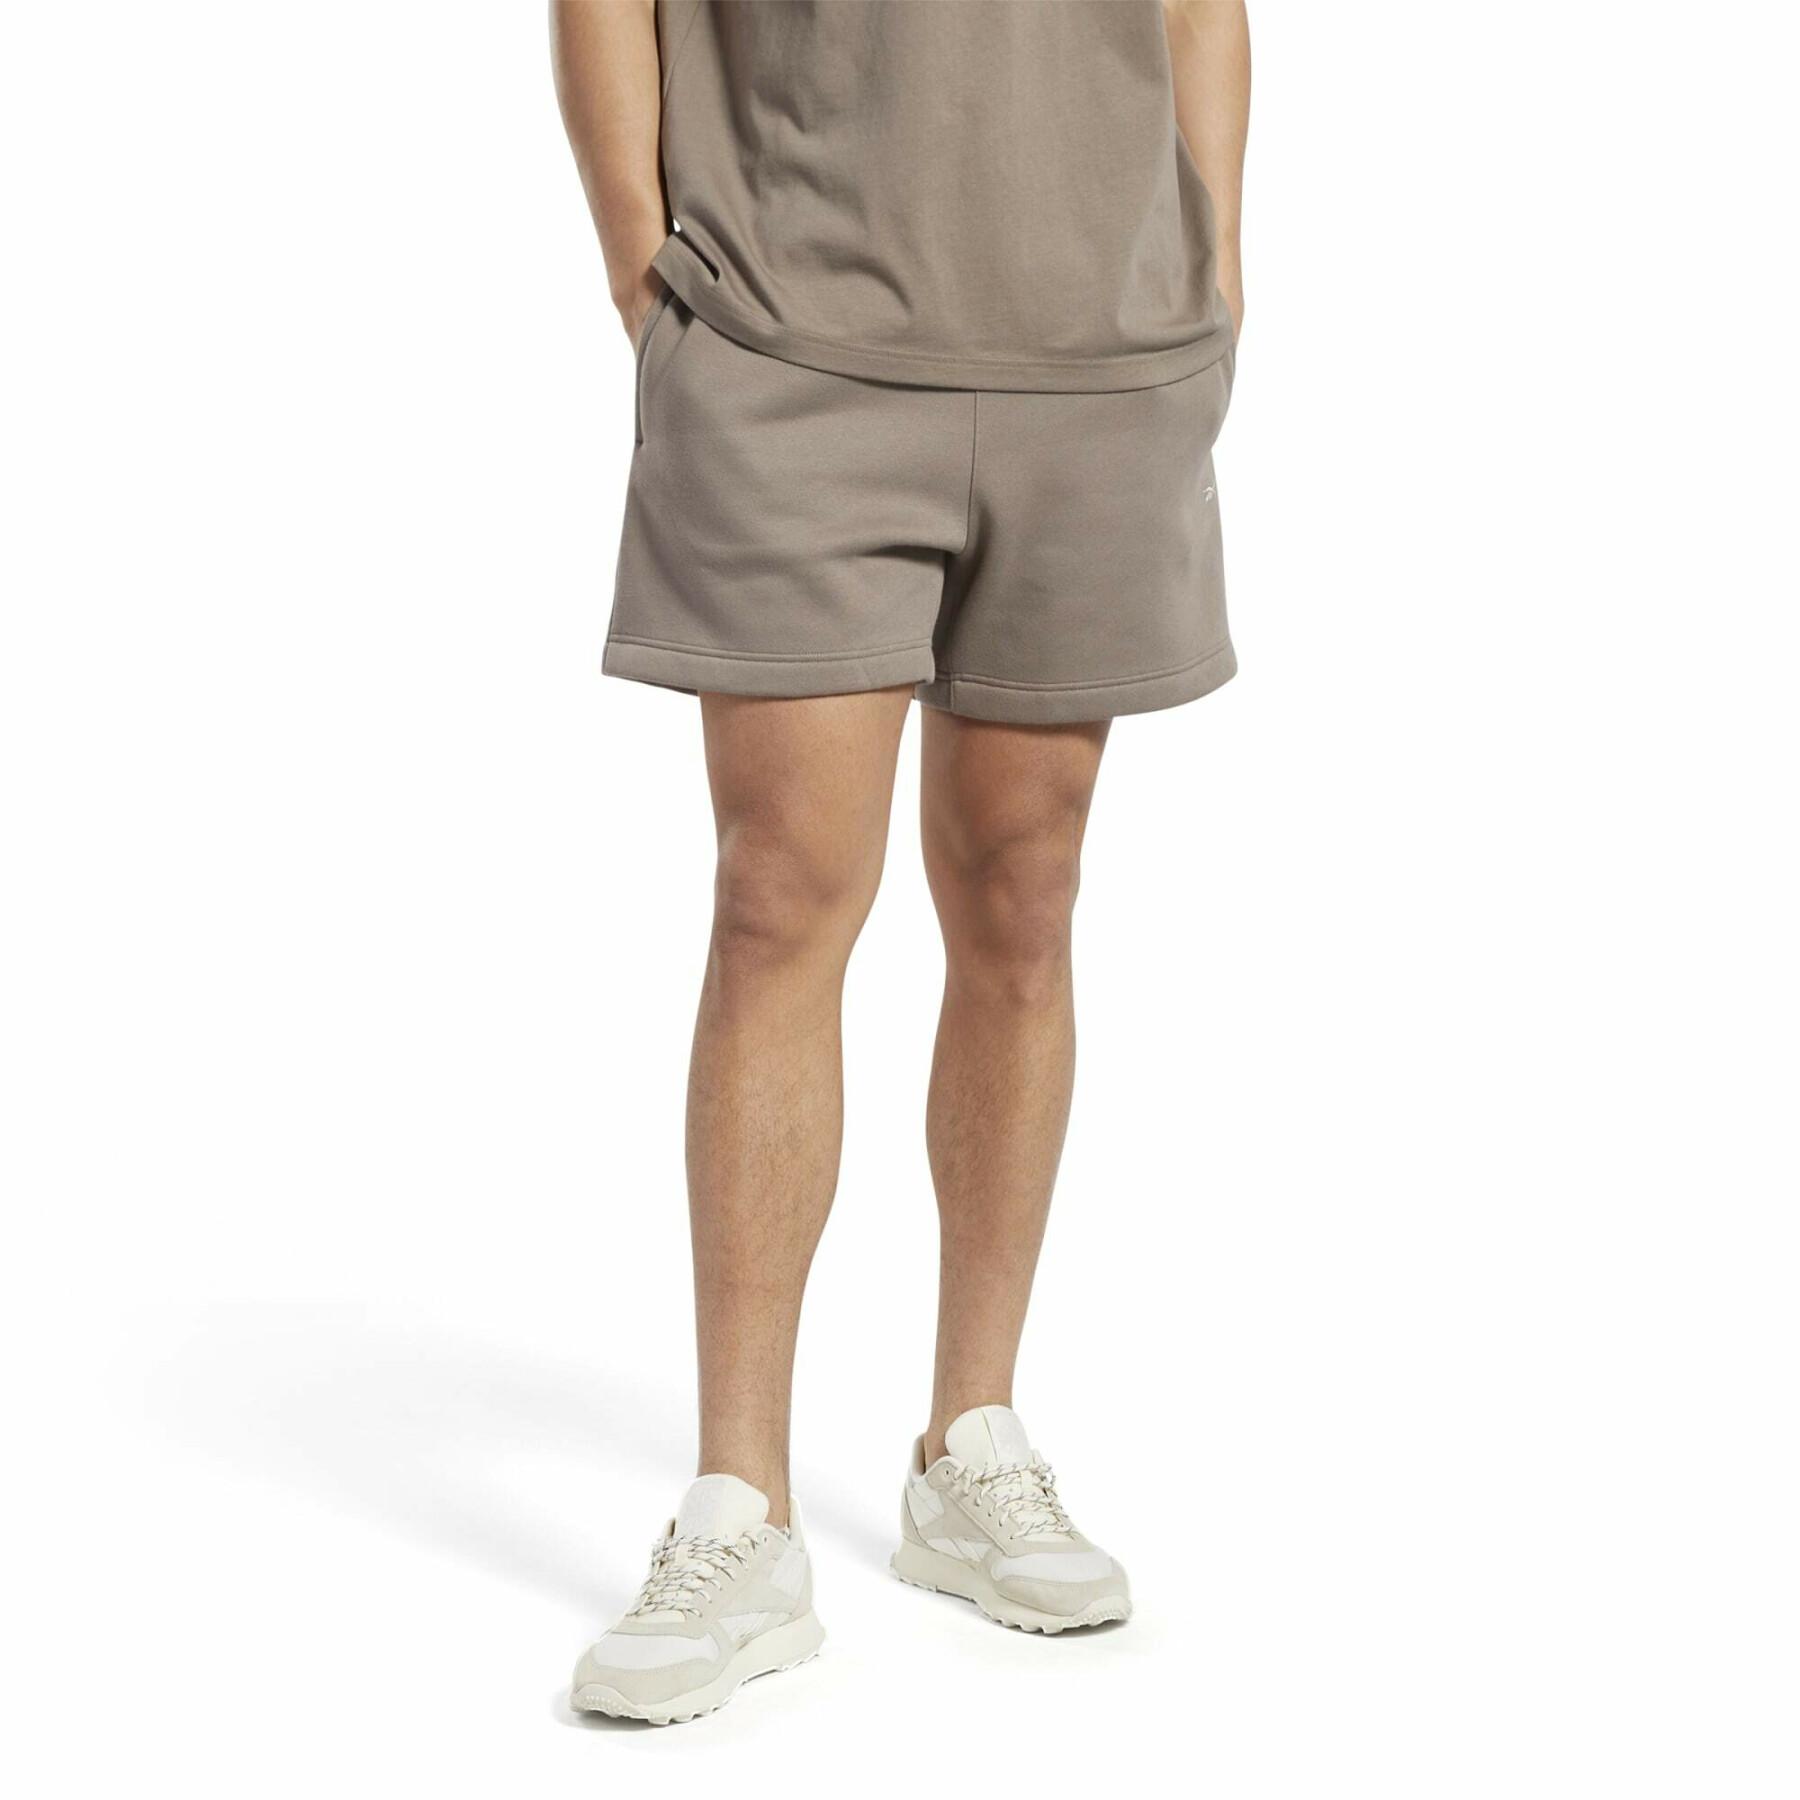 Wardrobe shorts Reebok Classics Essentials